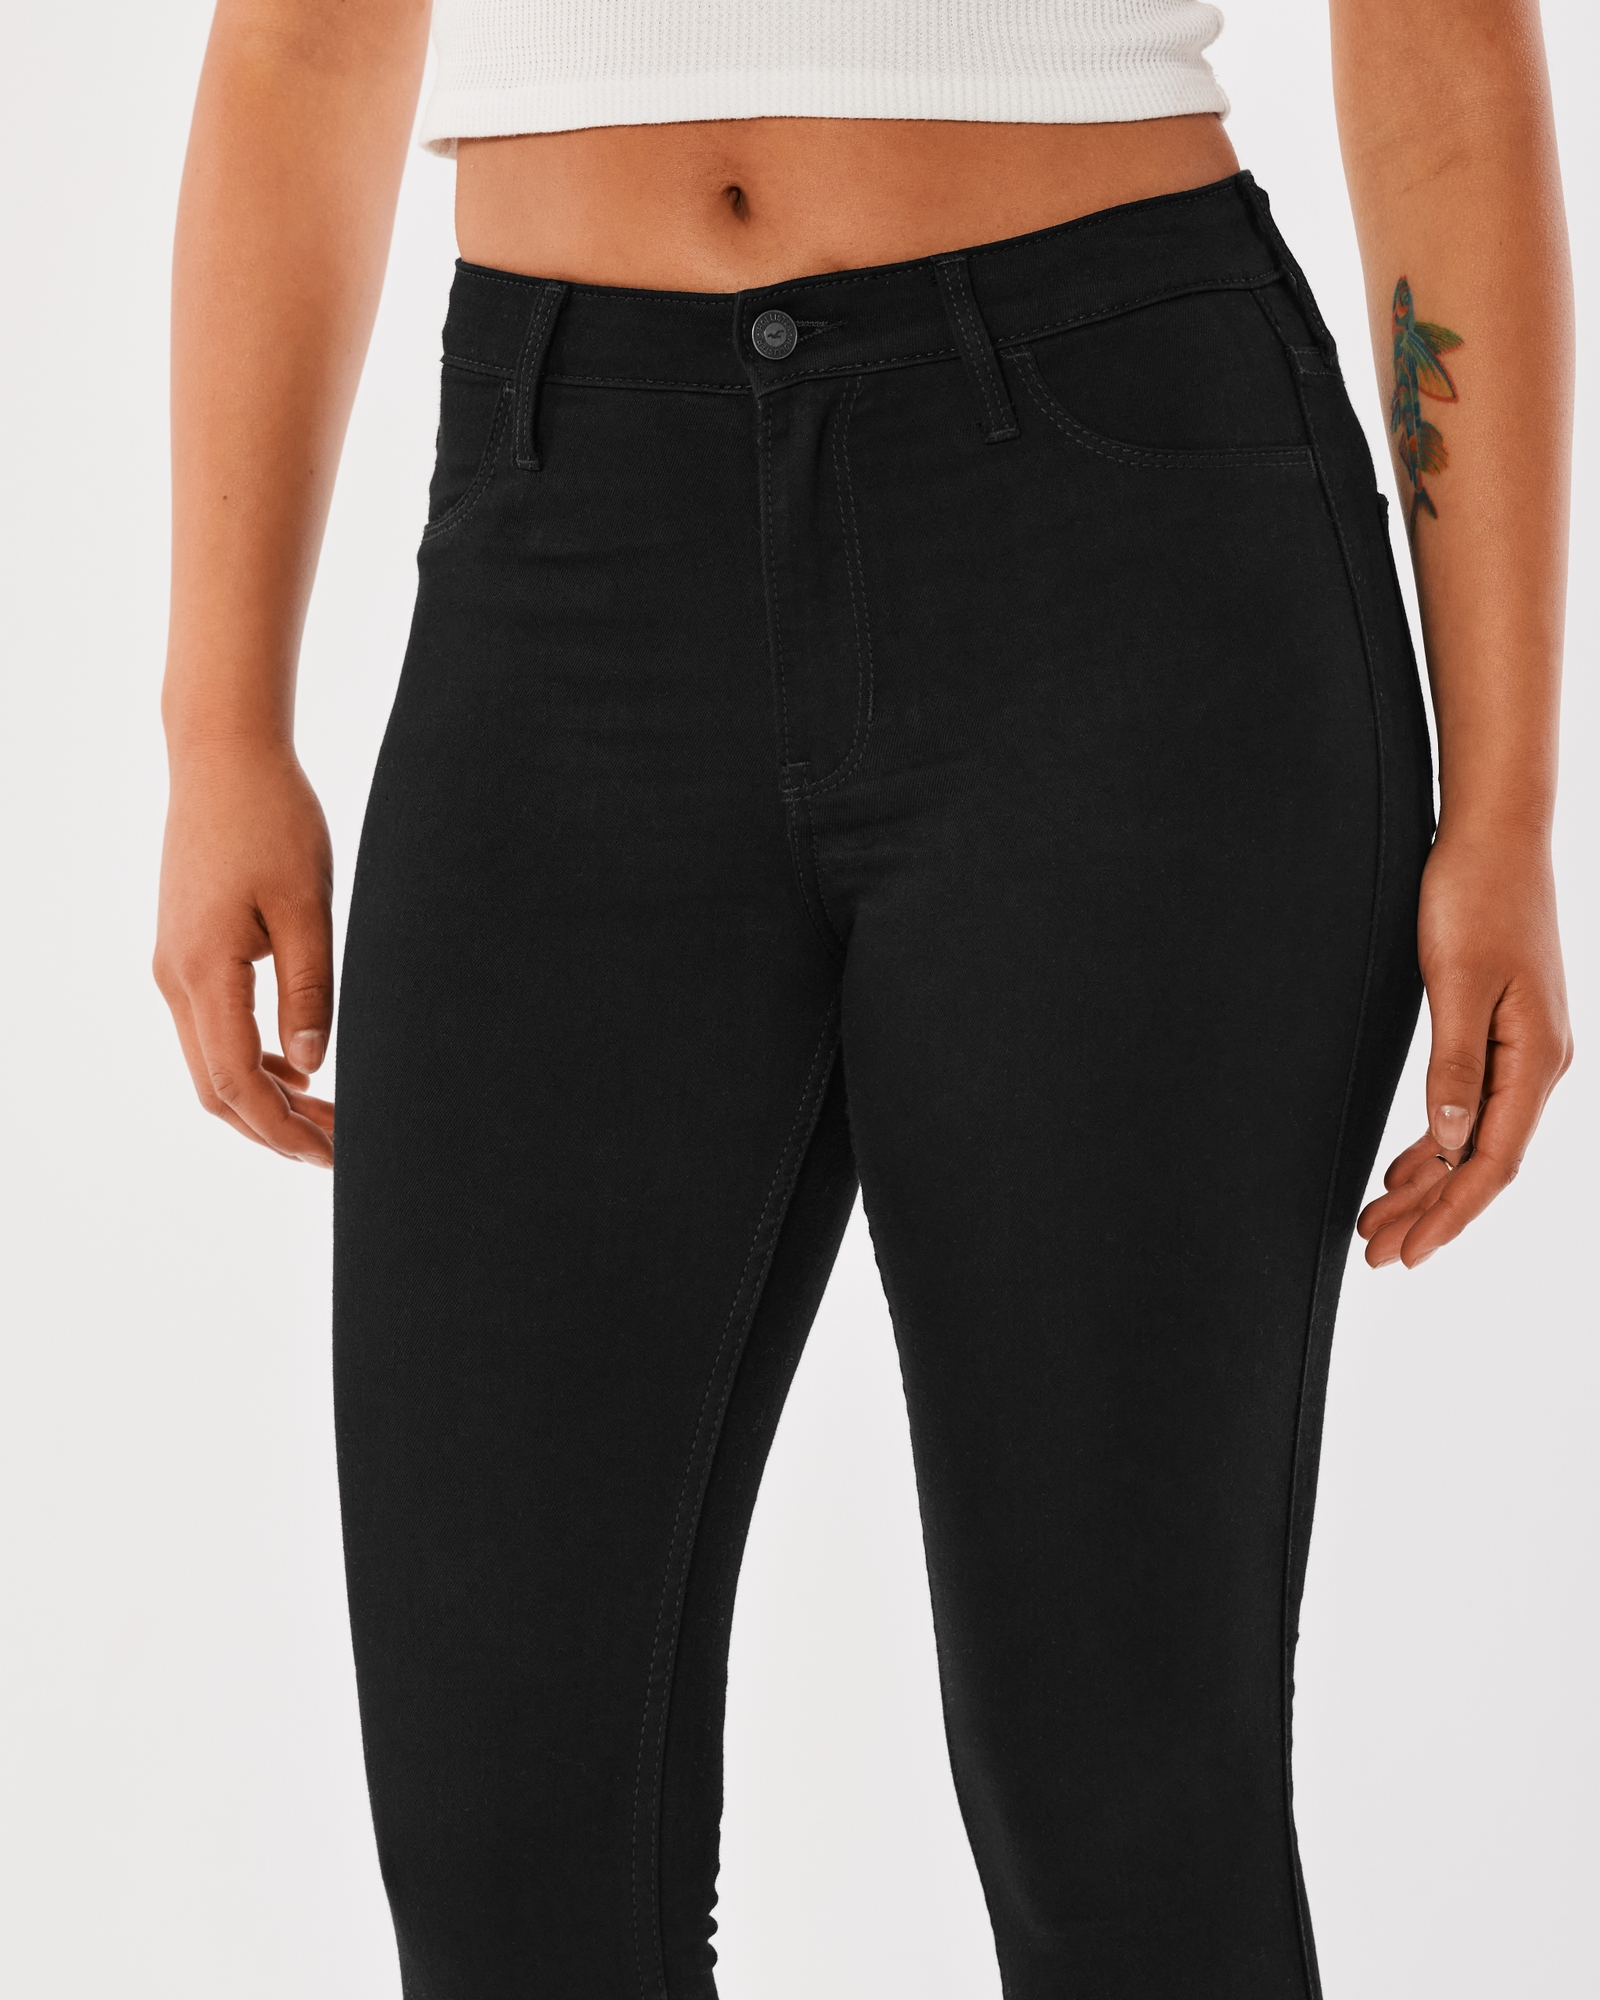 High waist black denim leggings for women